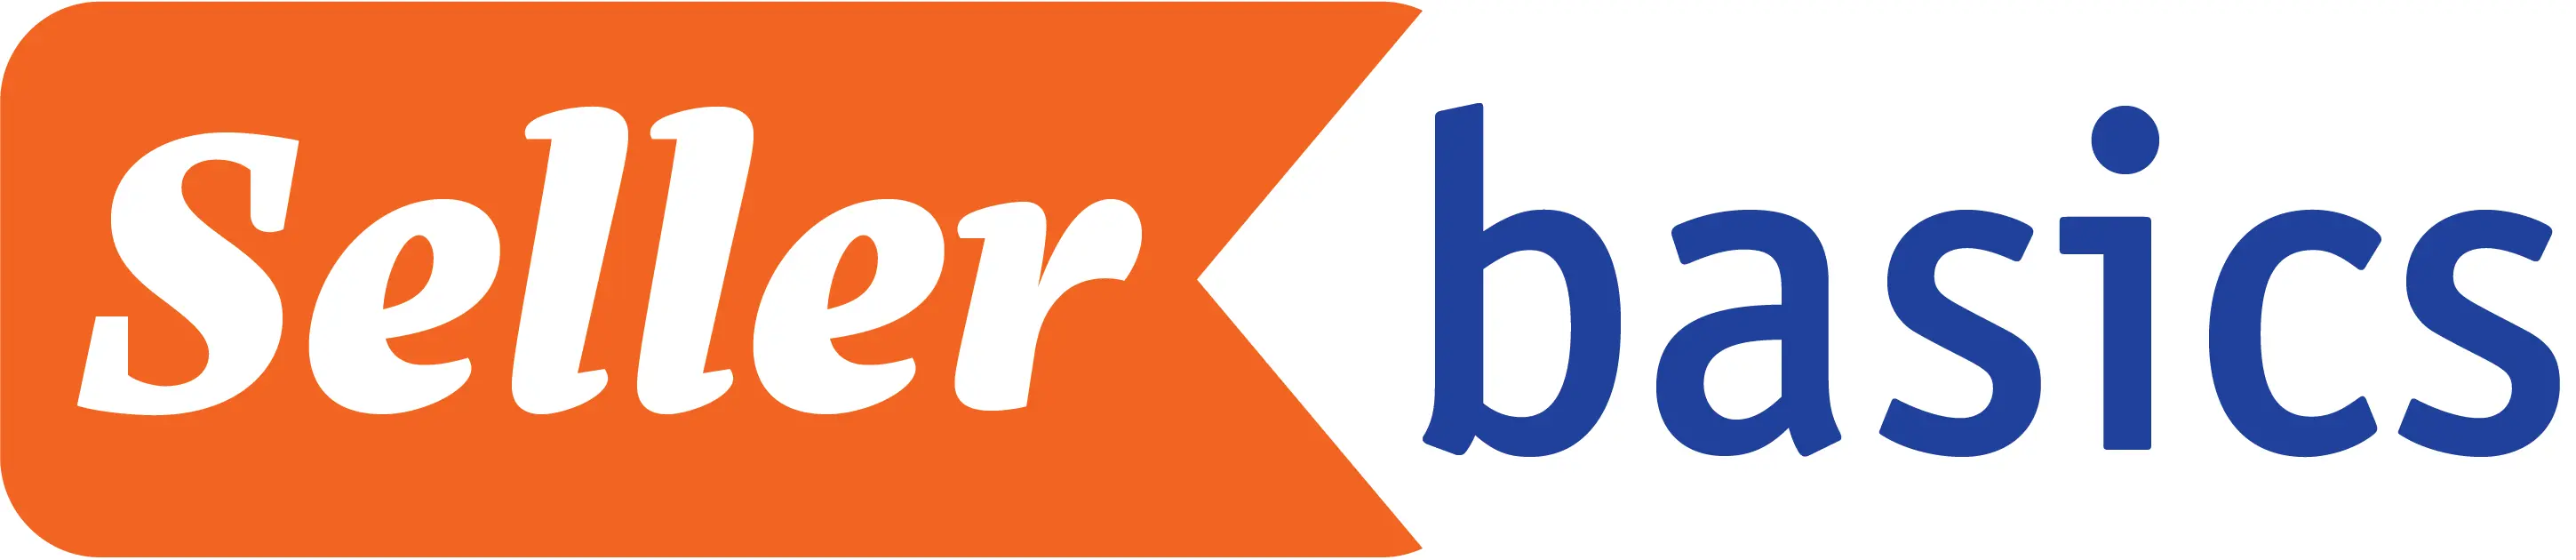 SellerBasics-logo-logo